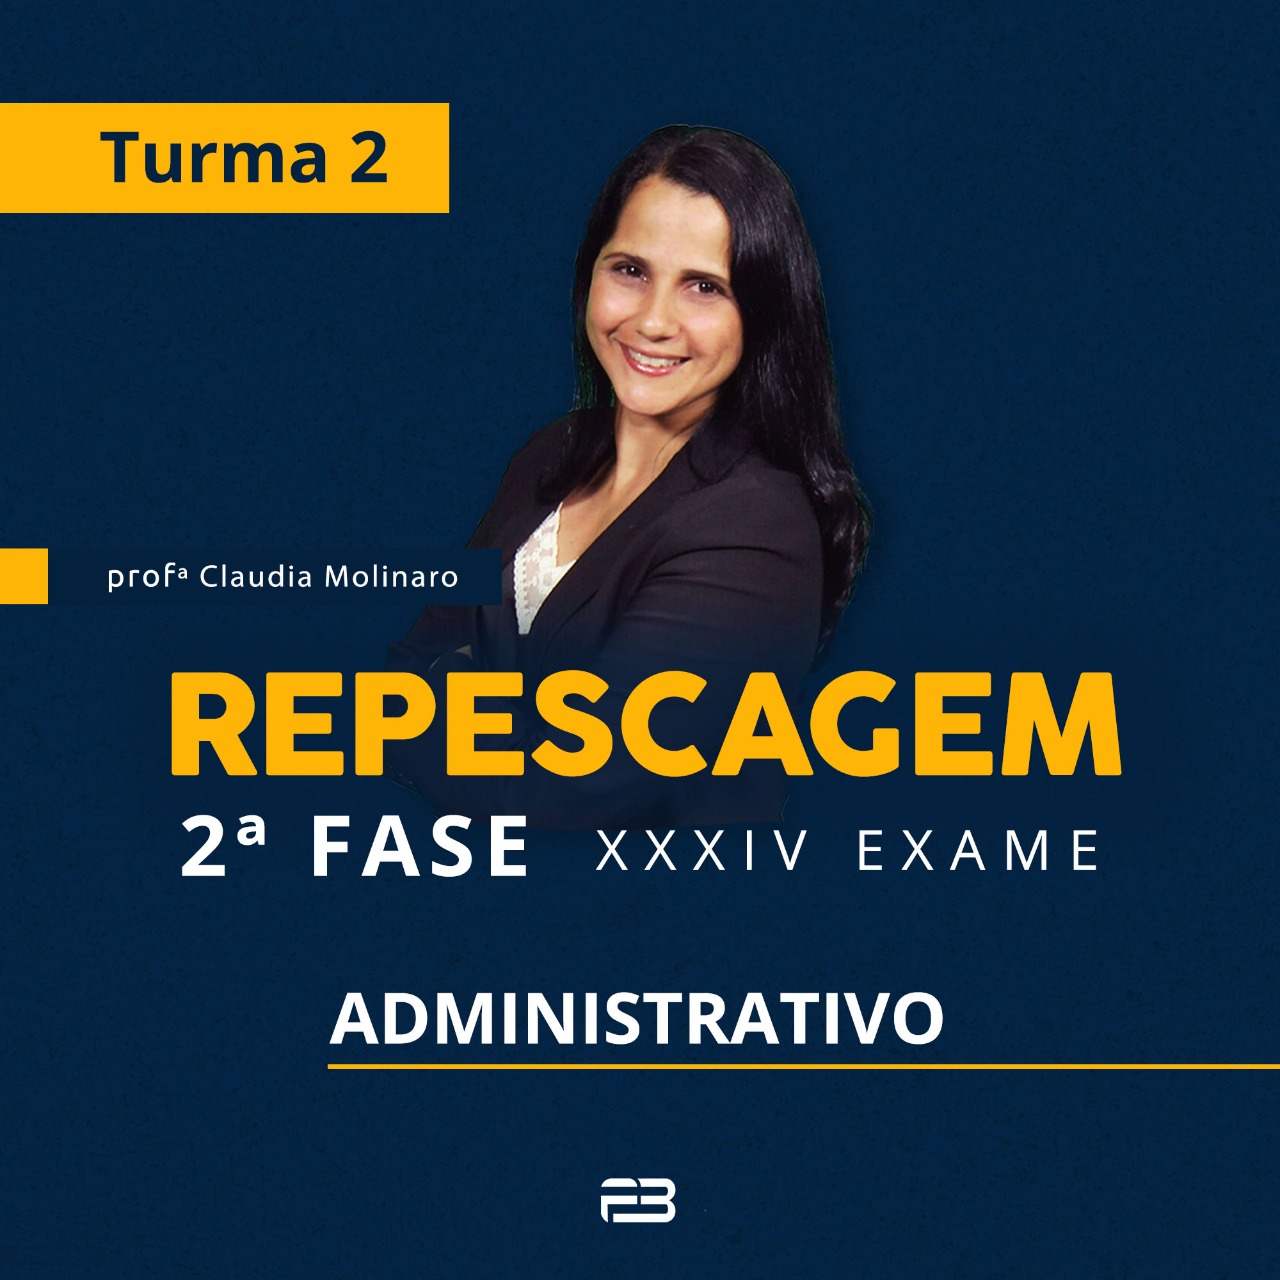 2ª FASE REPESCAGEM ADMINISTRATIVO TURMA 2 - XXXIV EXAME ONLINE